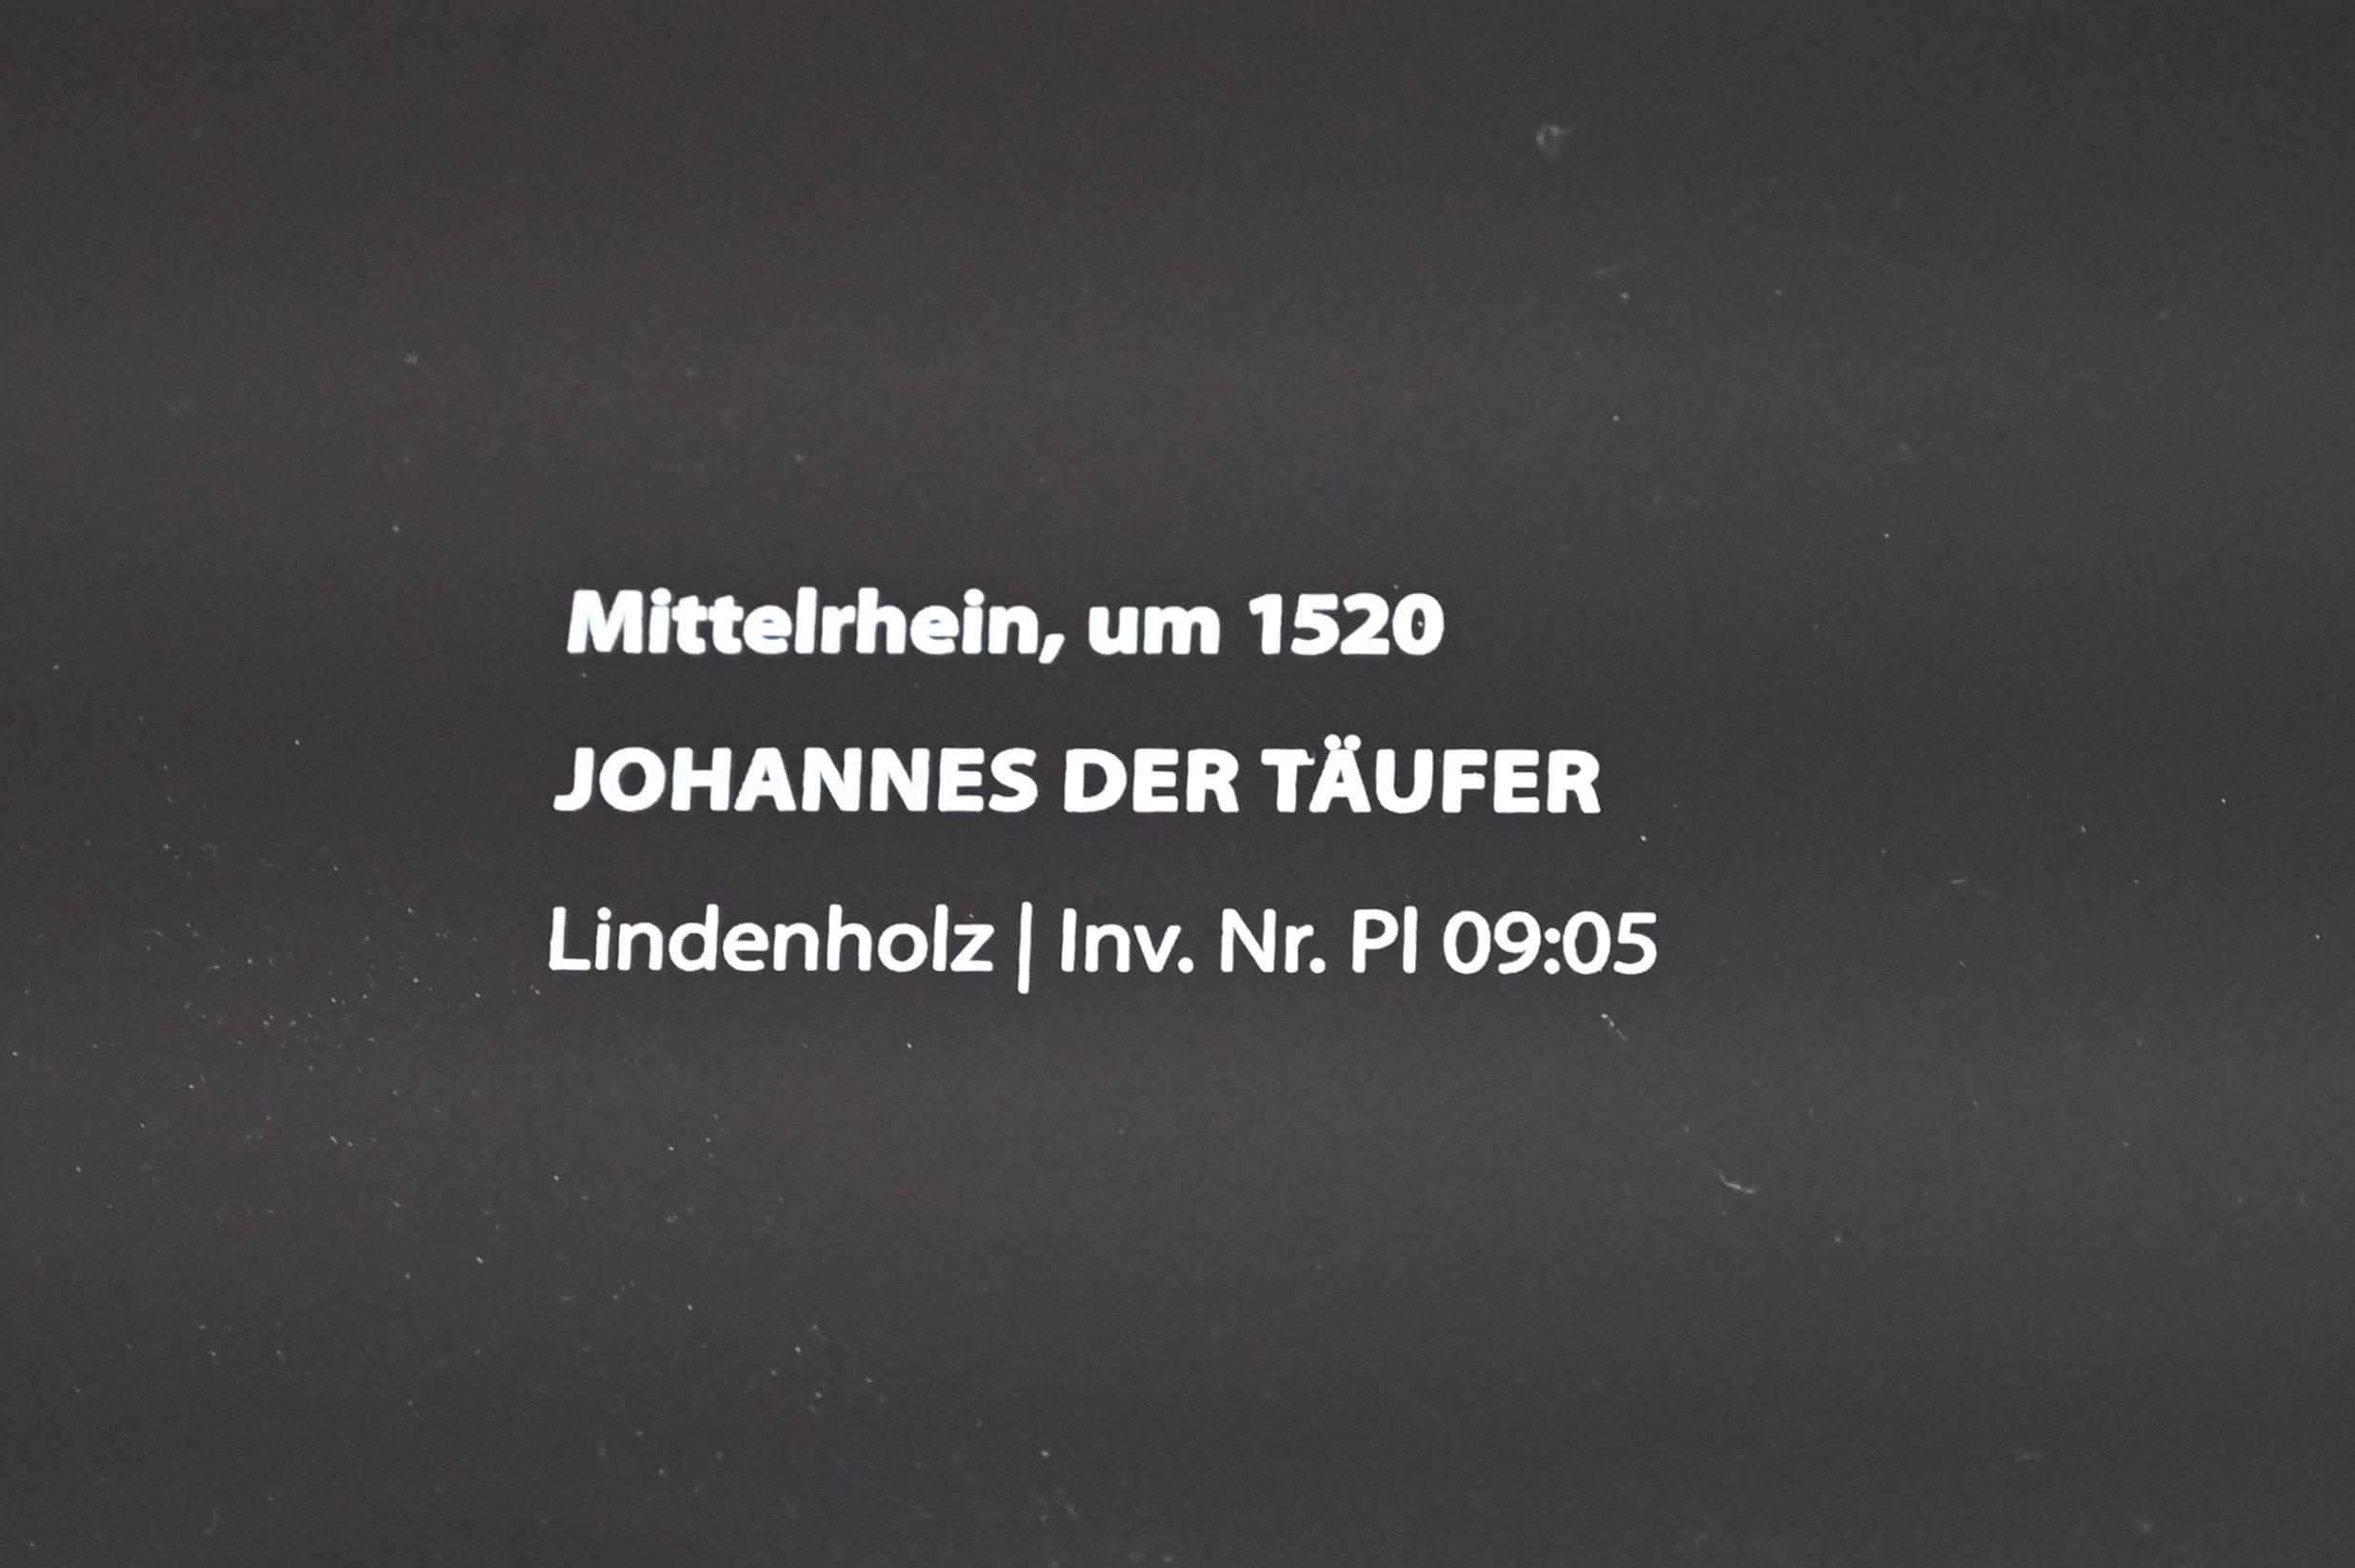 Johannes der Täufer, Darmstadt, Hessisches Landesmuseum, Saal 15, um 1520, Bild 4/4